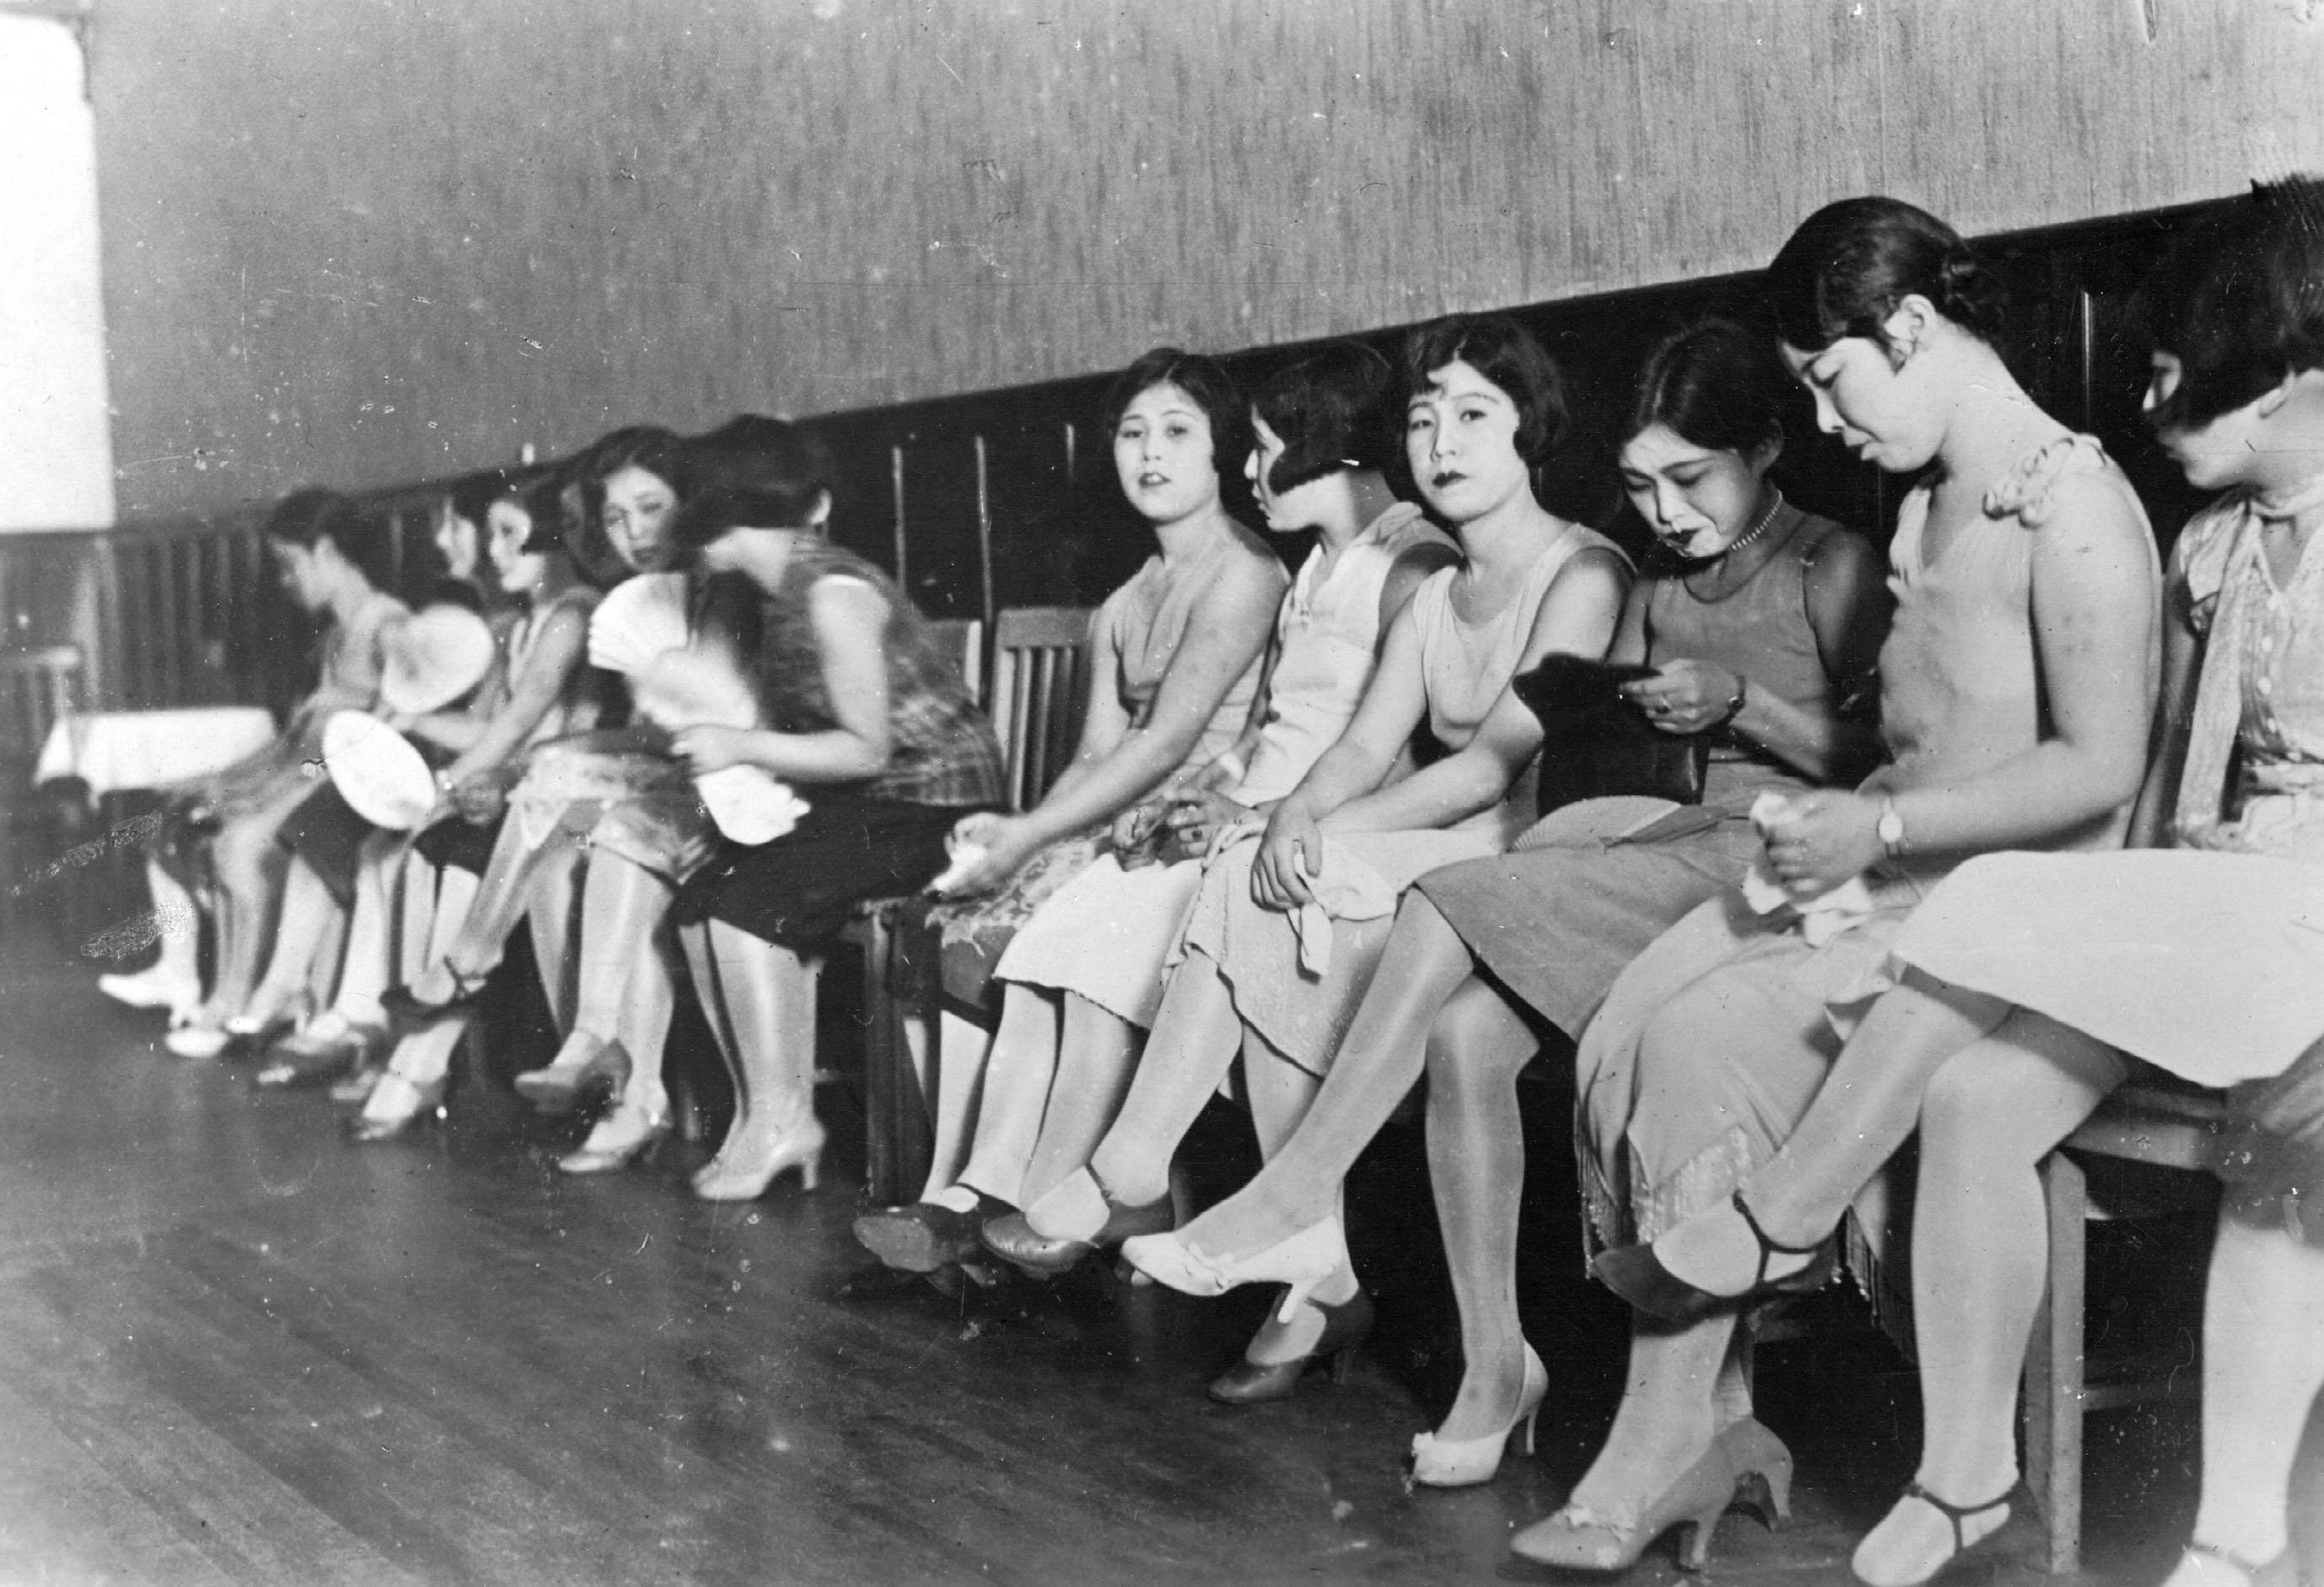 Prostitutes in Shanghai in 1931.